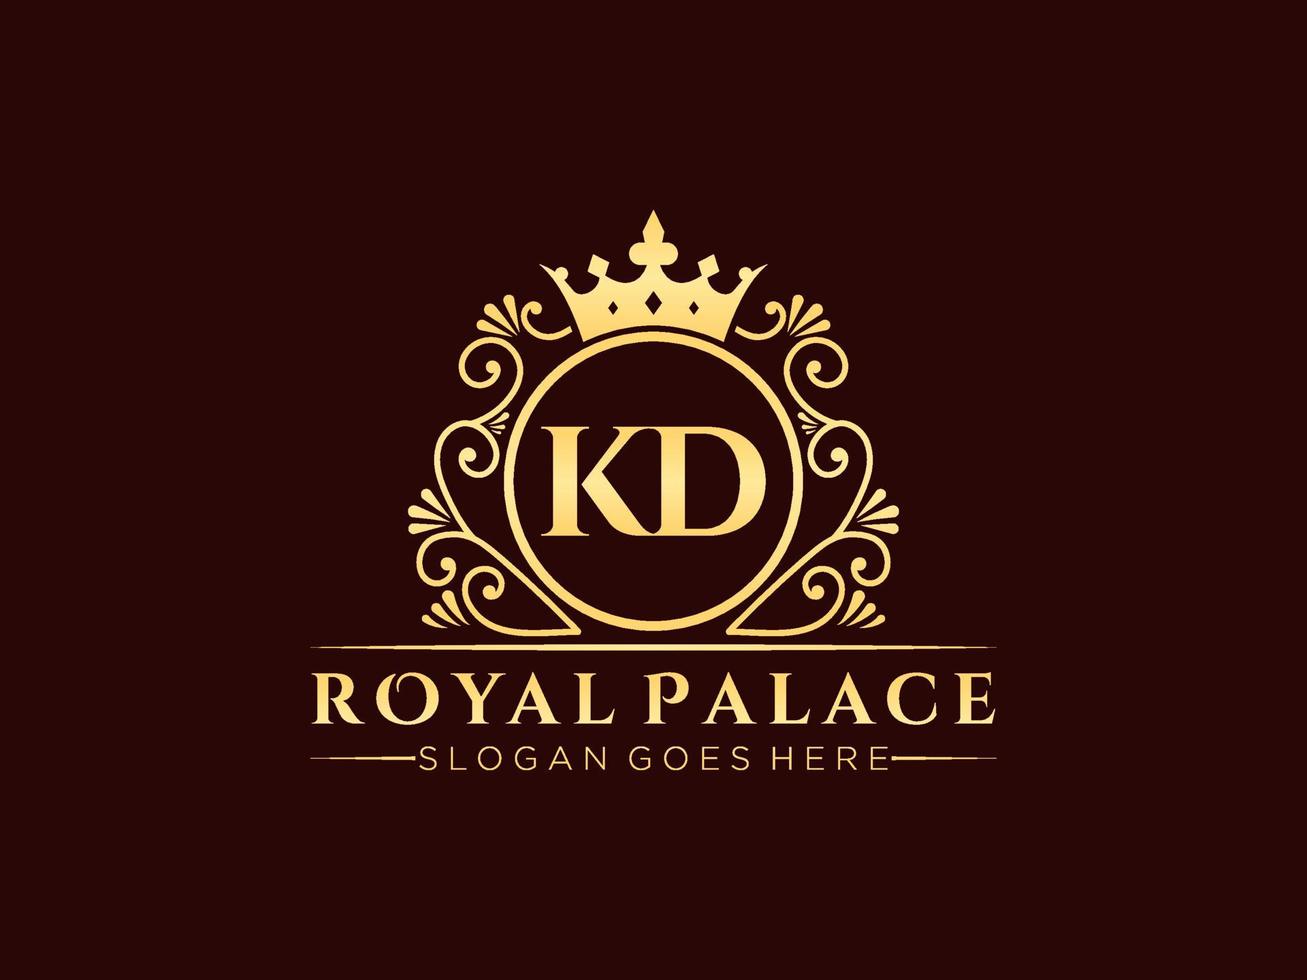 lettre kd logo victorien de luxe royal antique avec cadre ornemental. vecteur